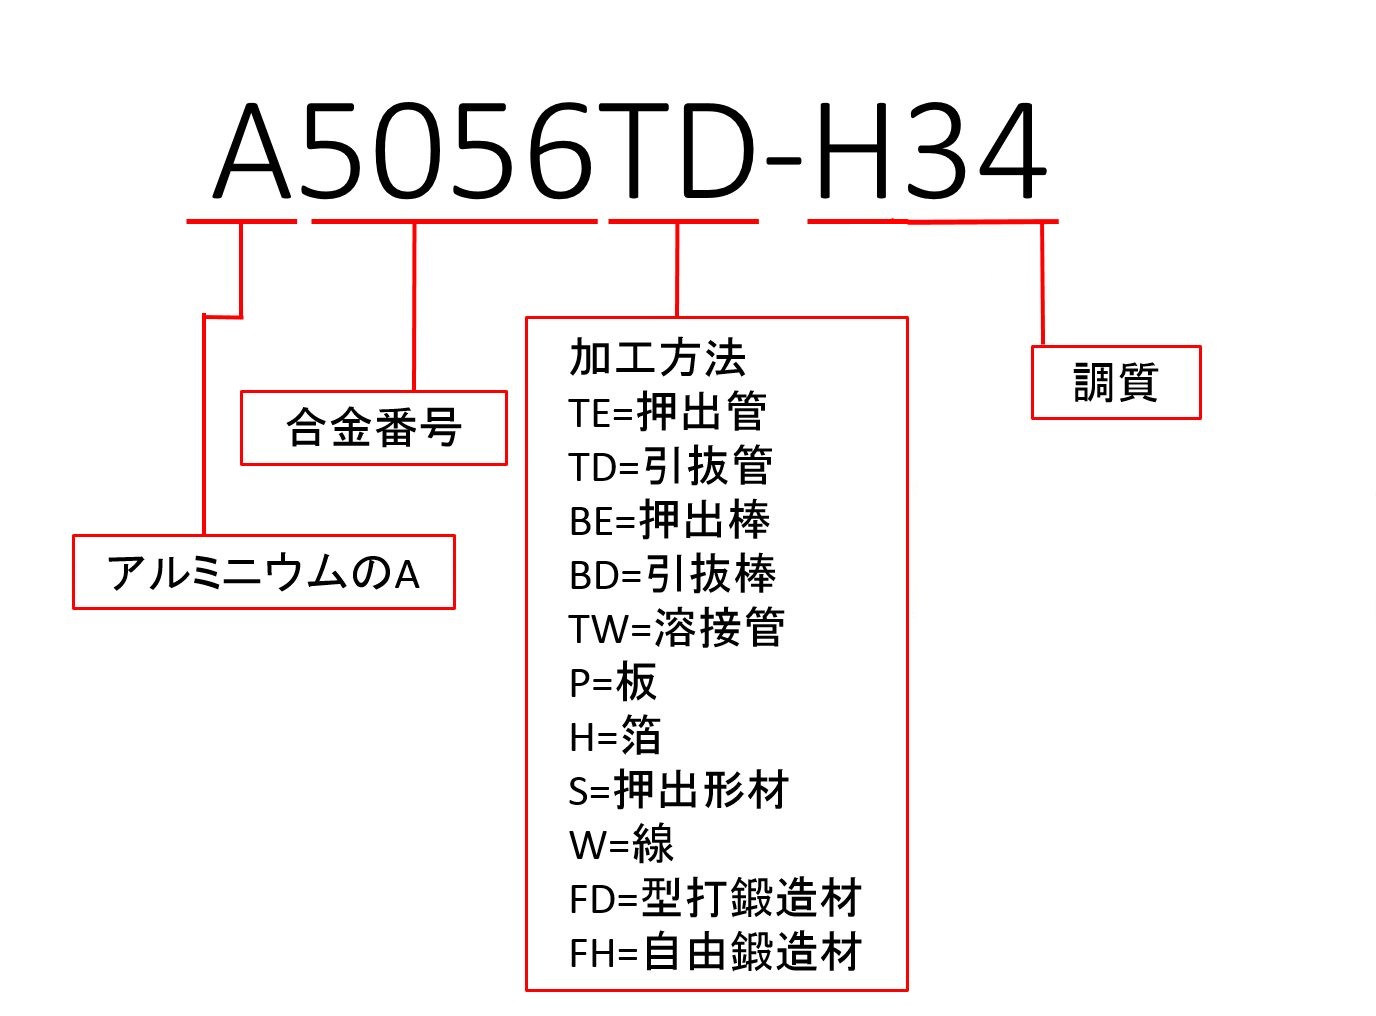 A5056TD-H34